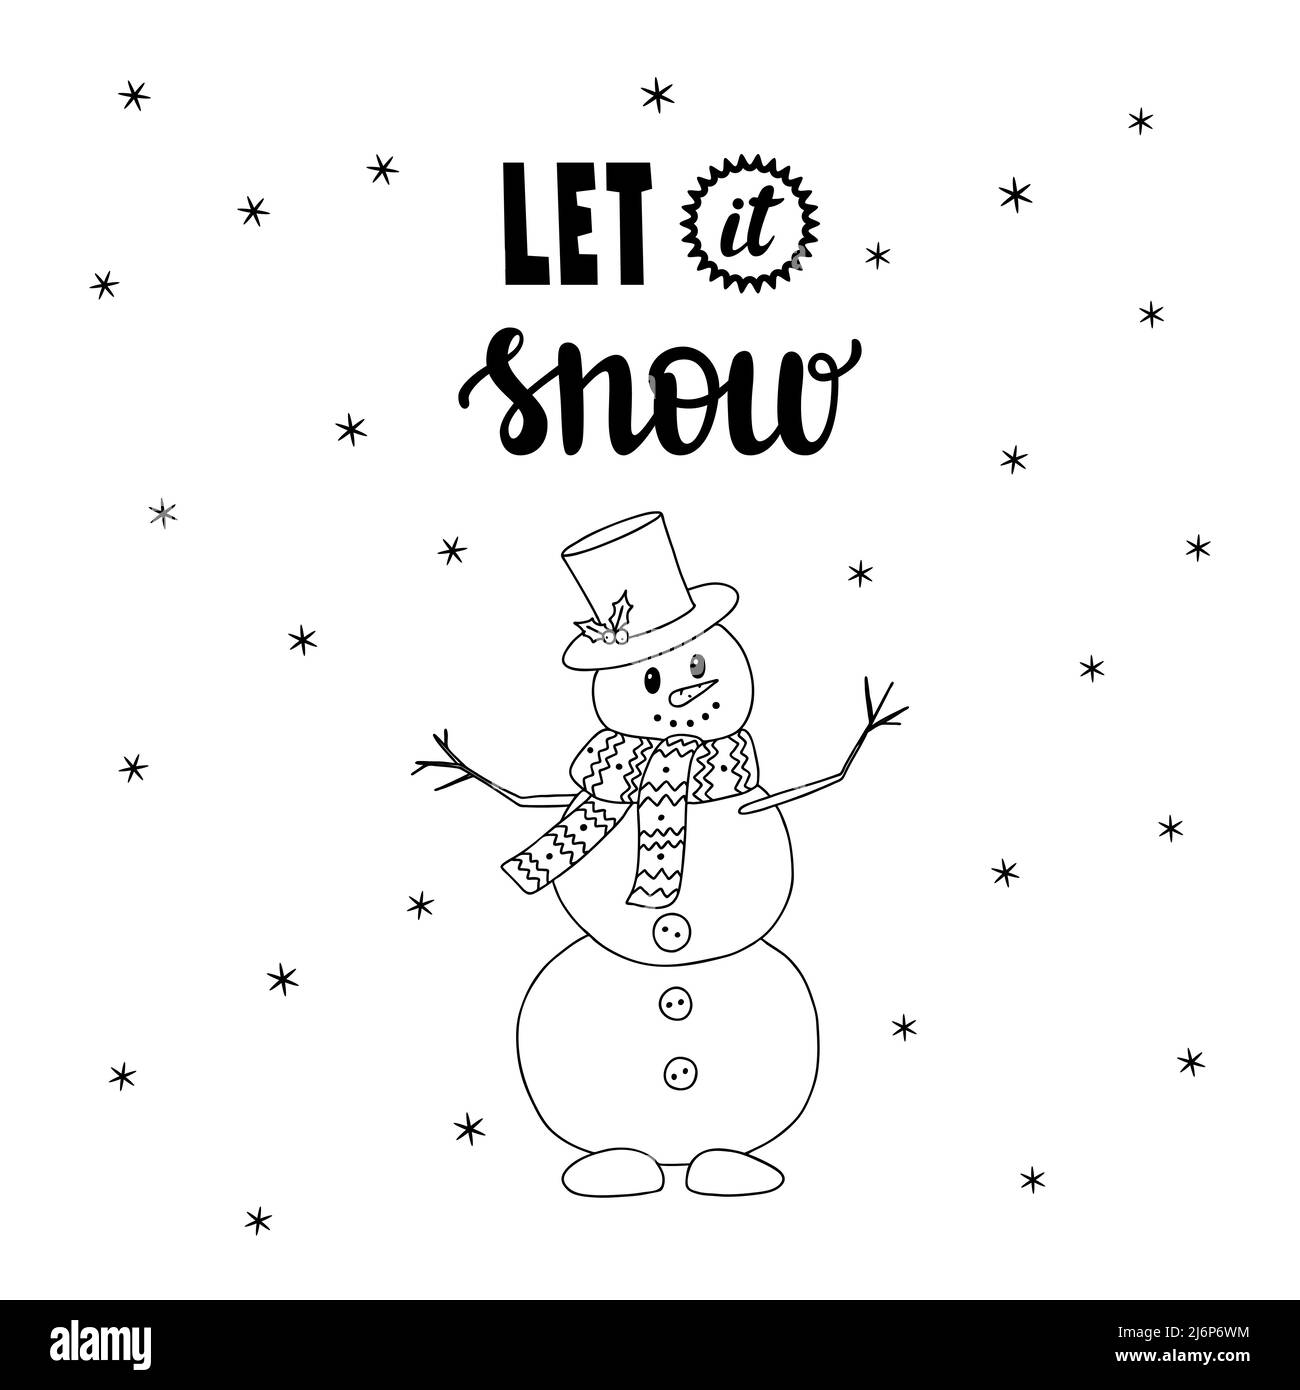 Muñeco de nieve en estilo Doodle y palabras escritas a mano-Deje nieve. Letras y elementos decorativos dibujados a mano. Ilustración vectorial en blanco y negro. Aislamiento Ilustración del Vector